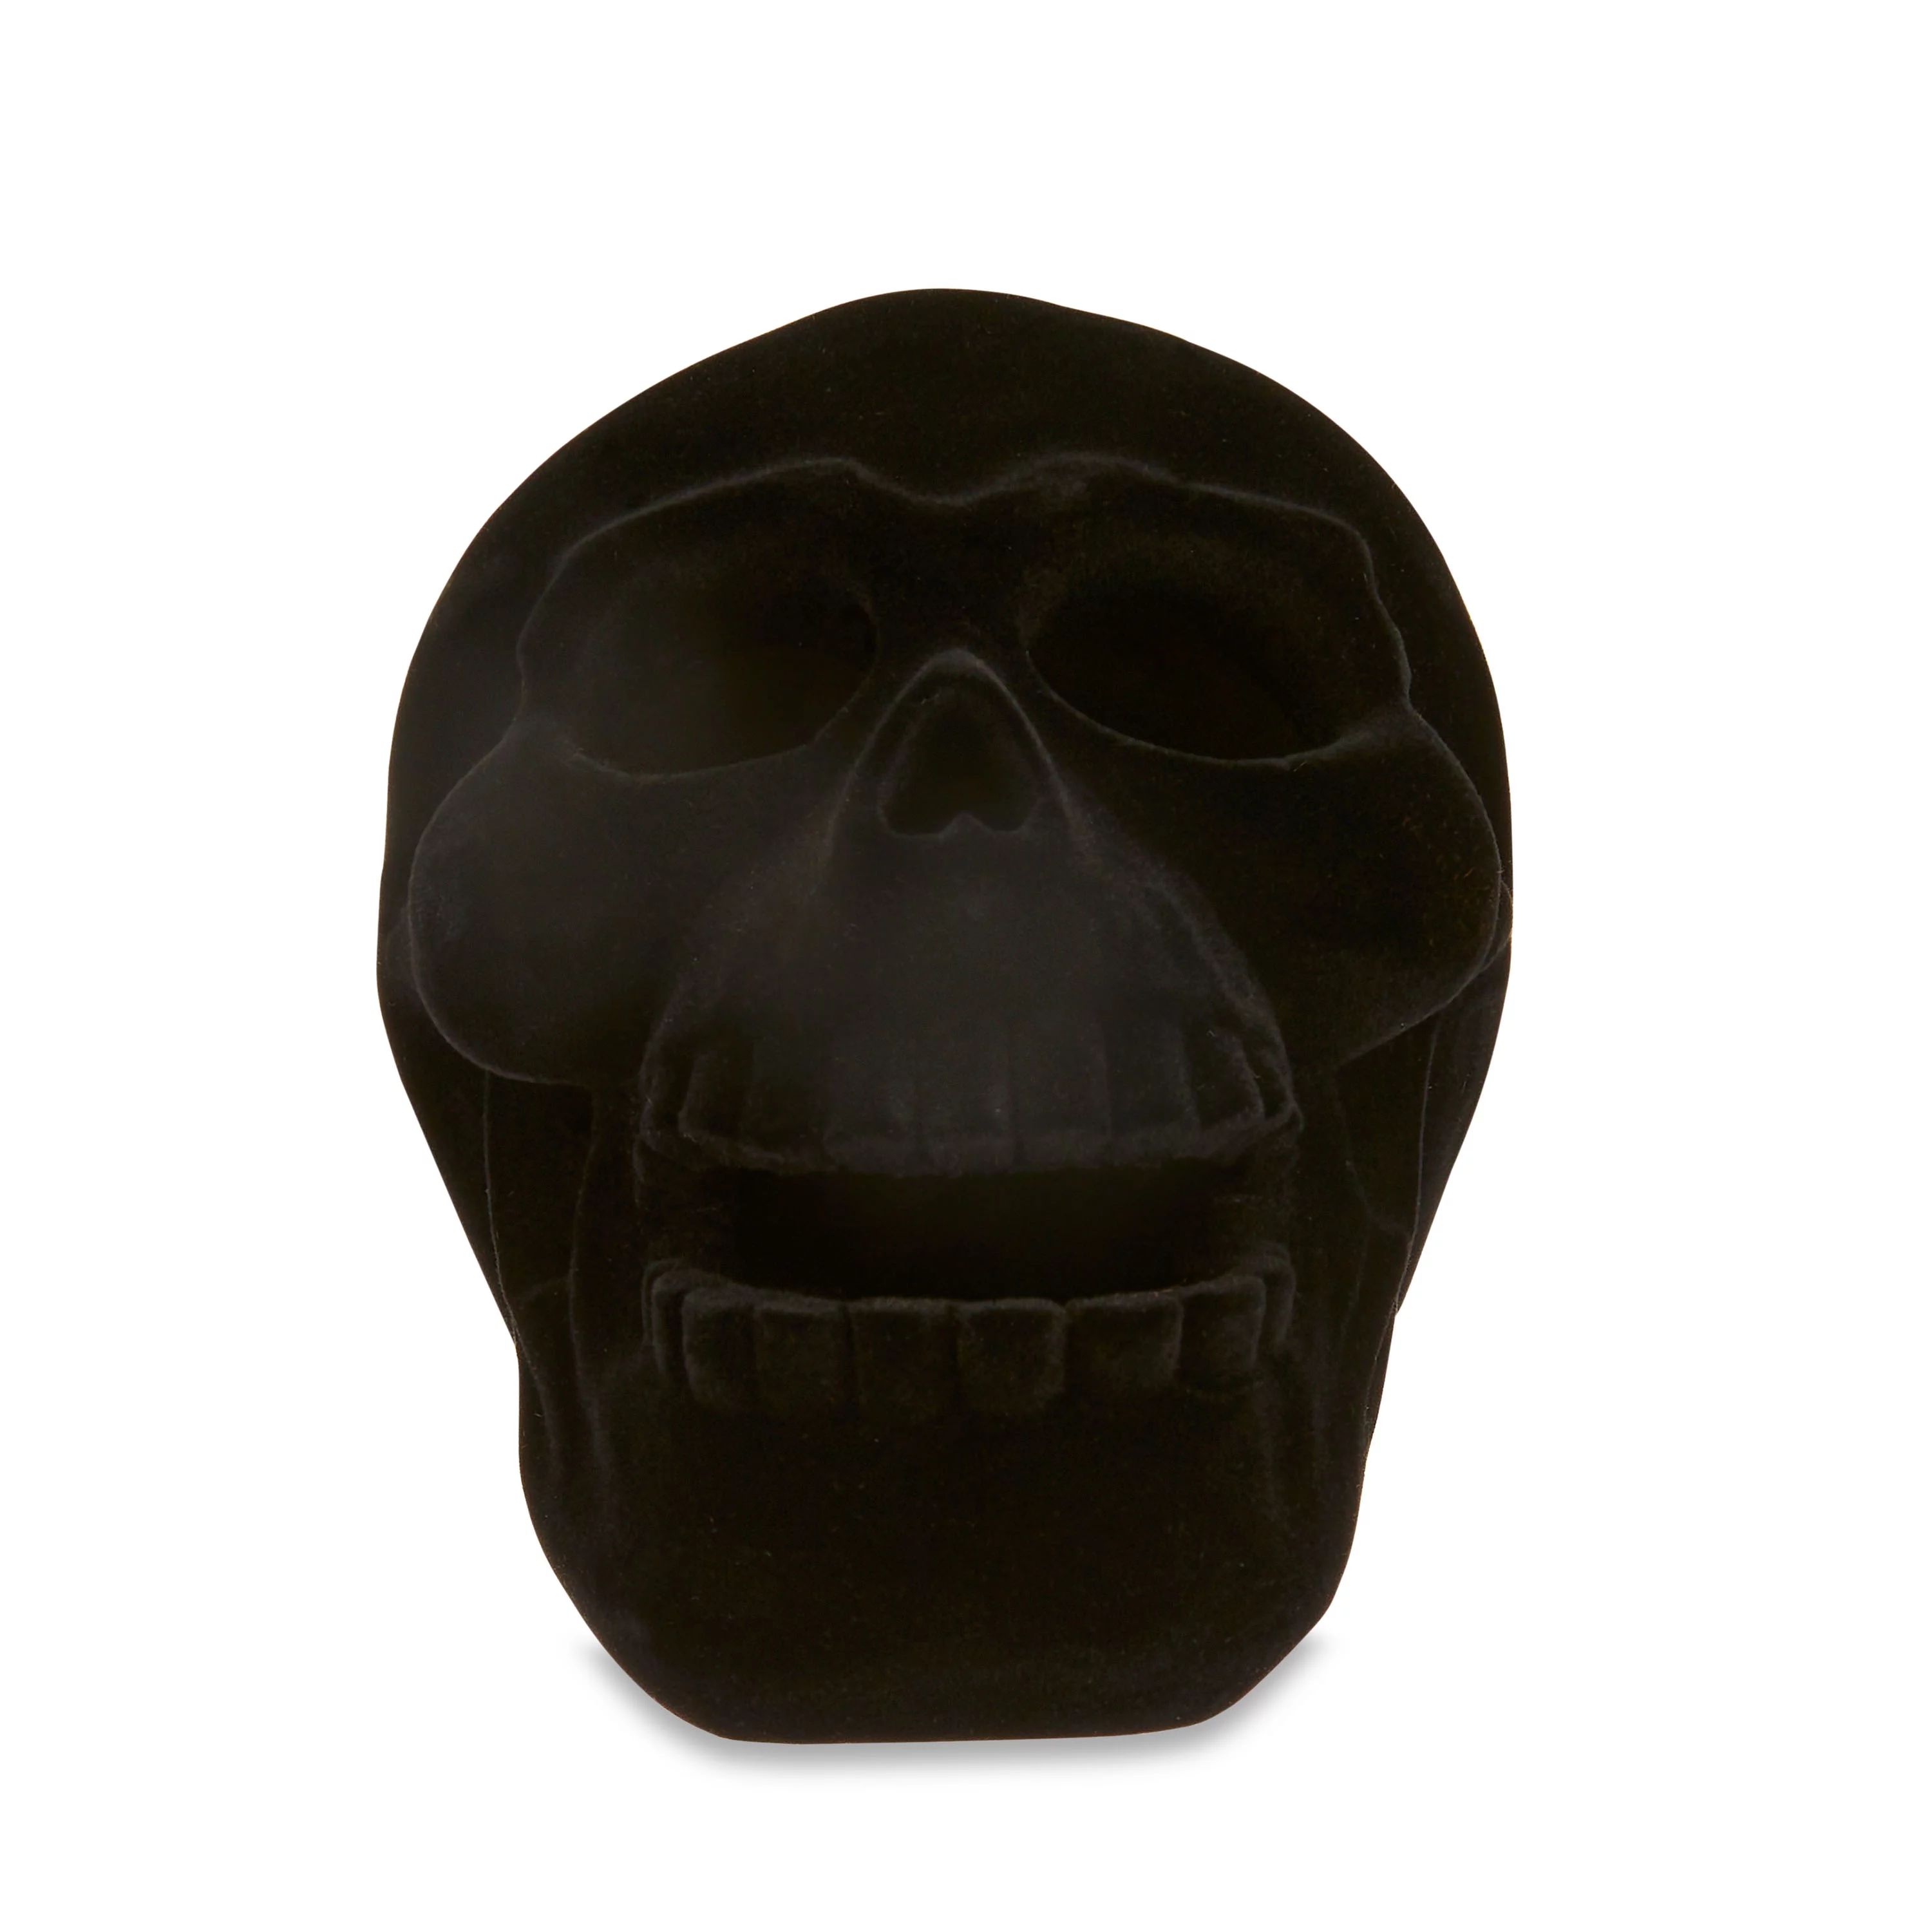 Halloween Small Flocked Skull, Black, 3"L x 4.35"W x 3.25"H, Way To Celebrate | Walmart (US)